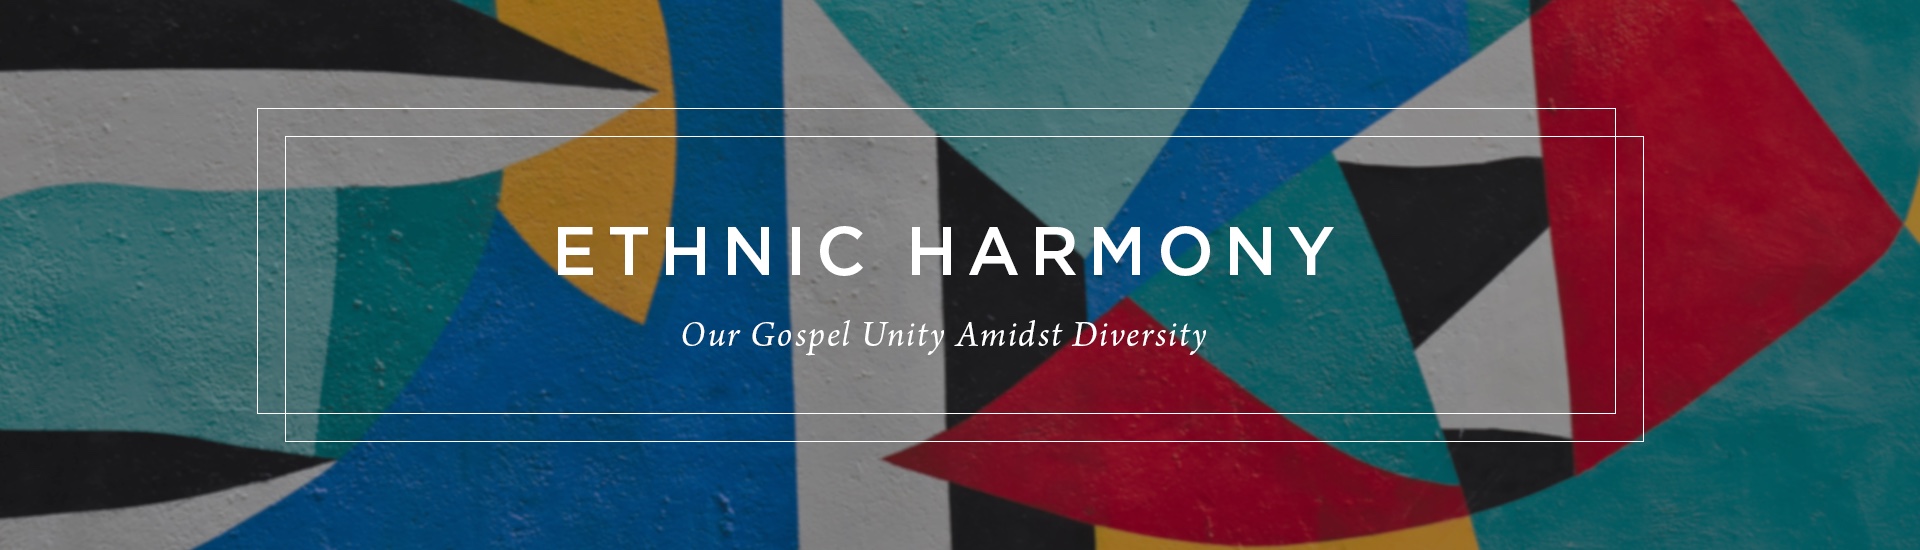 Ethnic Harmony: Our Gospel Unity Amidst Diversity